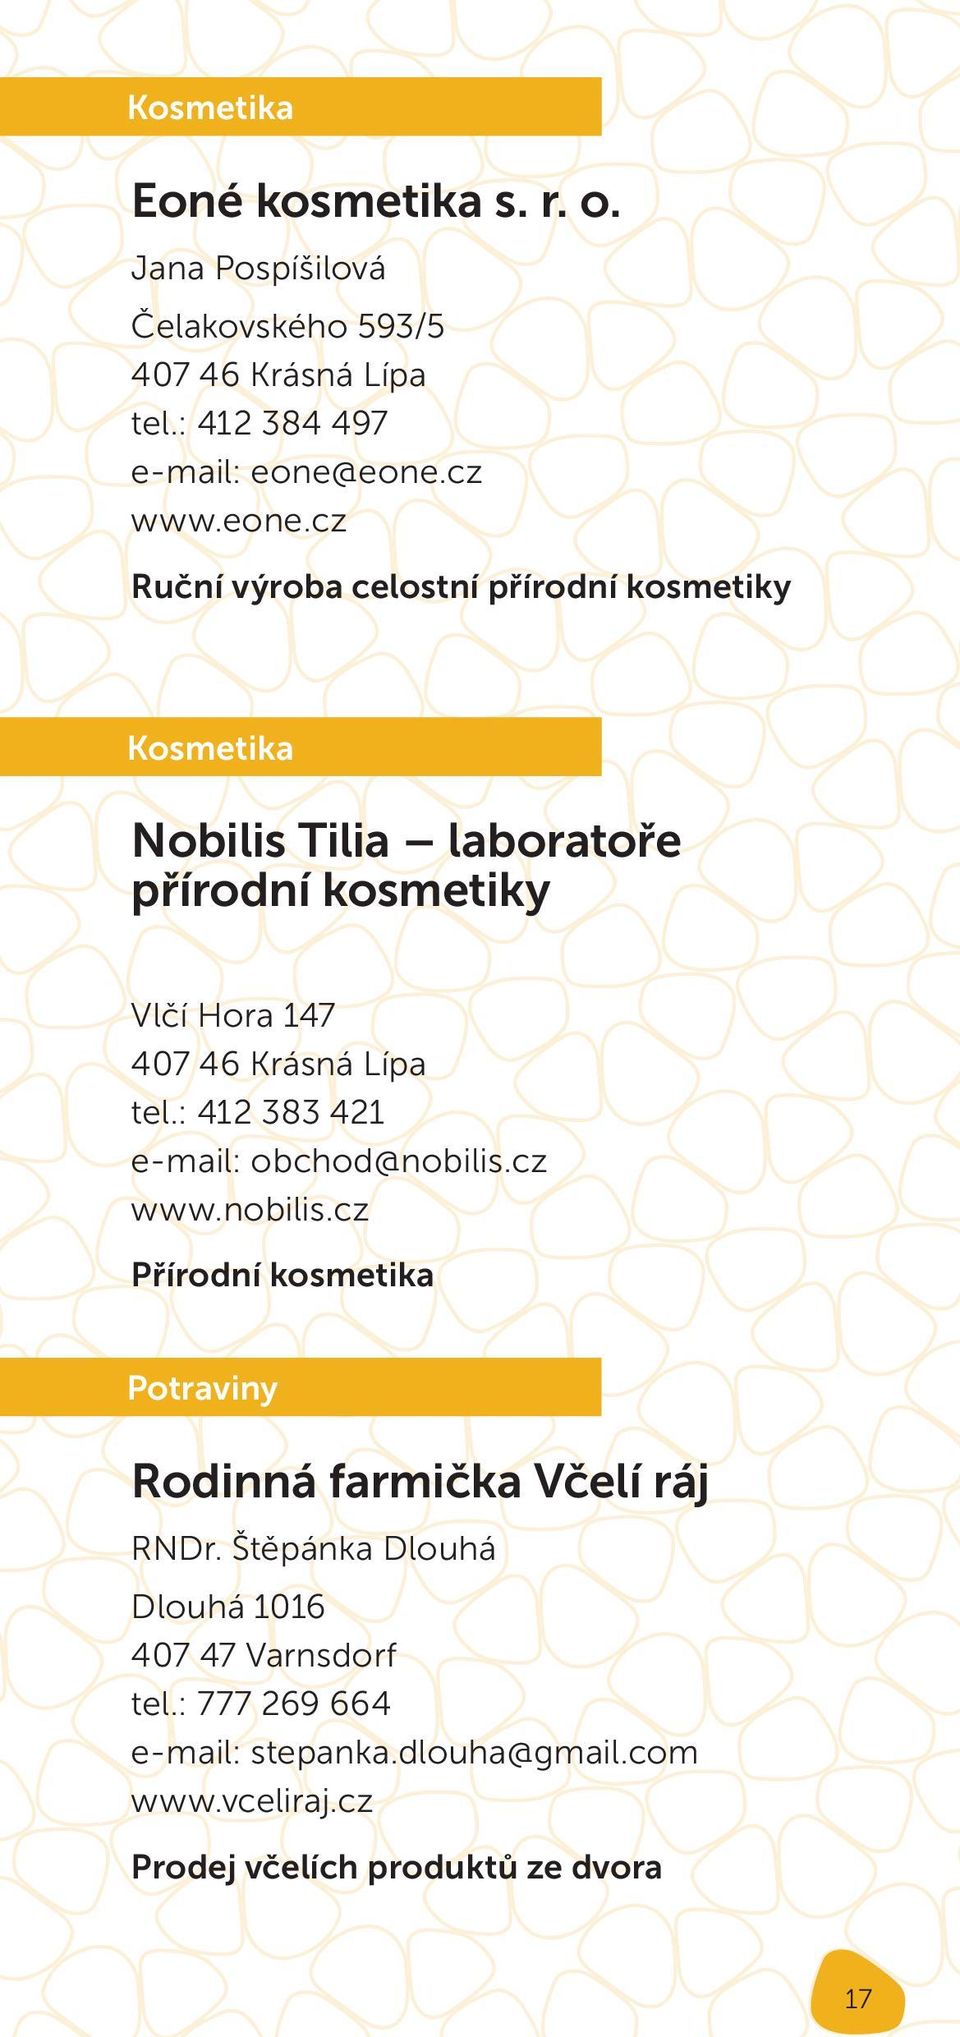 Lípa tel.: 412 383 421 e-mail: obchod@nobilis.cz www.nobilis.cz Přírodní kosmetika Potraviny Rodinná farmička Včelí ráj RNDr.